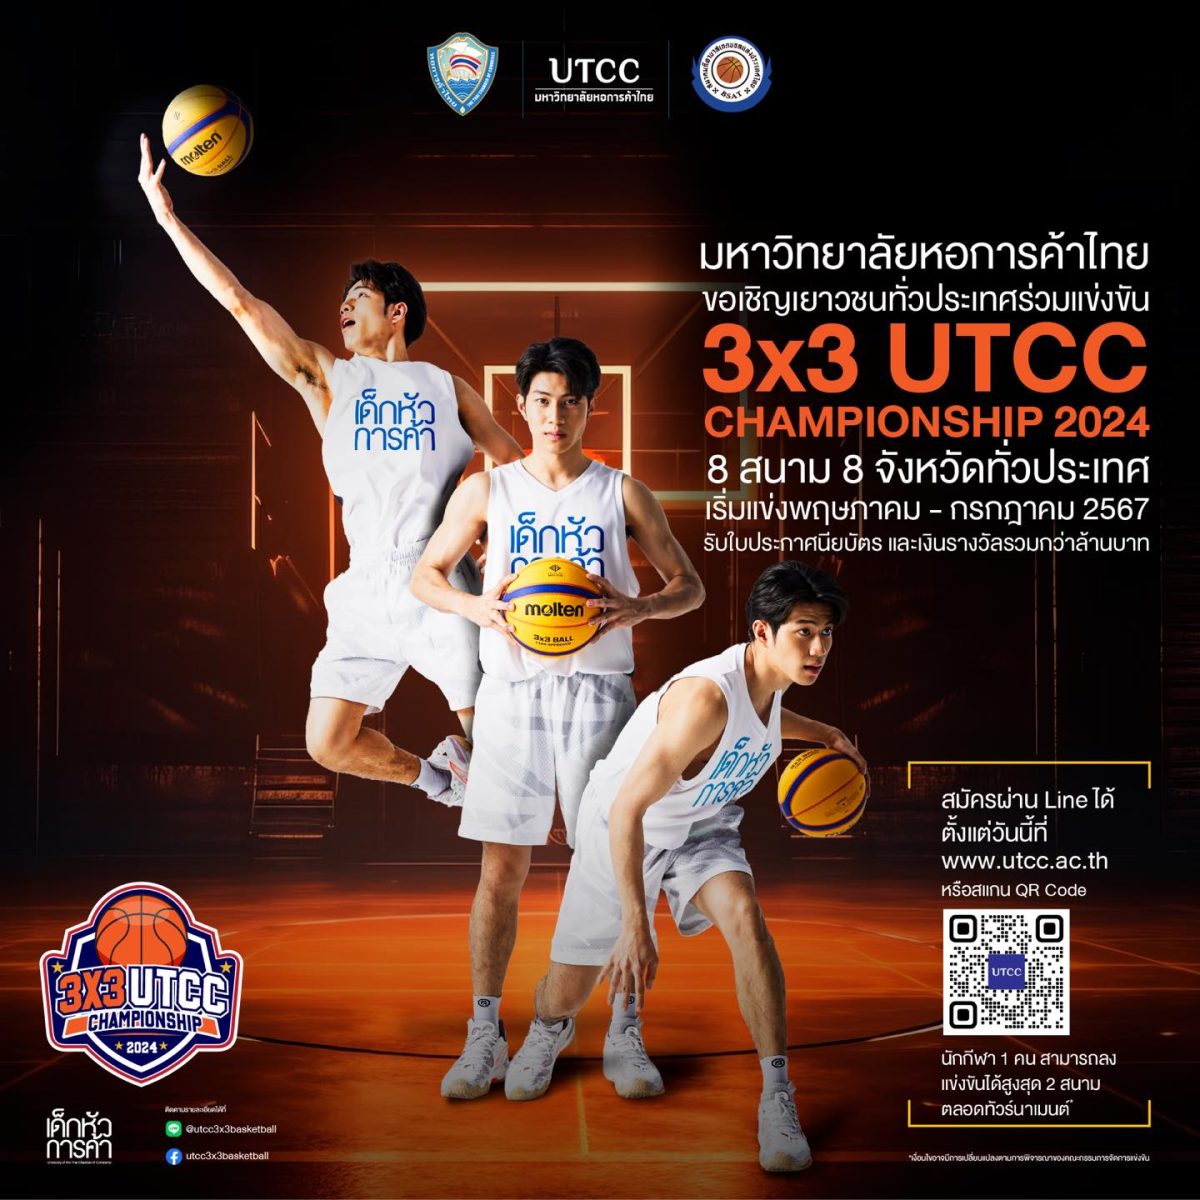 ม.หอการค้าไทย ผนึกพันธมิตรชั้นนำจัดแข่งบาสเกตบอลเพื่อวัยรุ่น 3×3 UTCC Championship 2024 ชิงถ้วยและเงินรางวัล 3 รุ่น